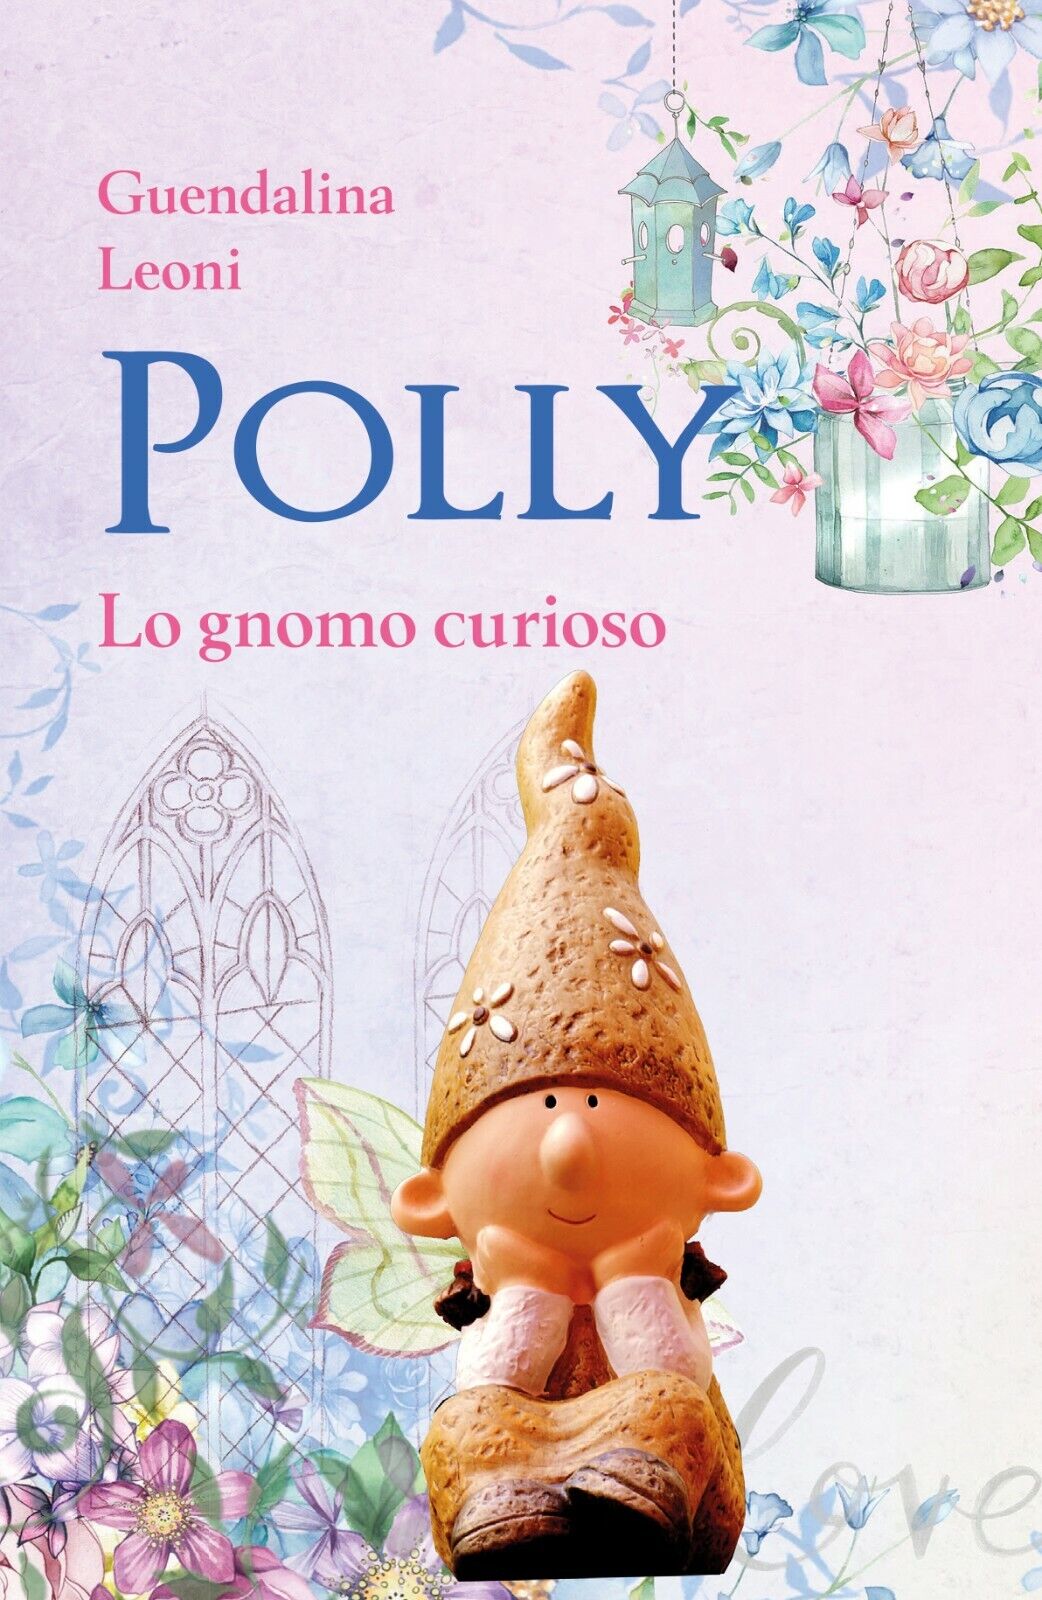   Polly lo gnomo curioso -  Guendalina Leoni,  2020,  Youcanprint